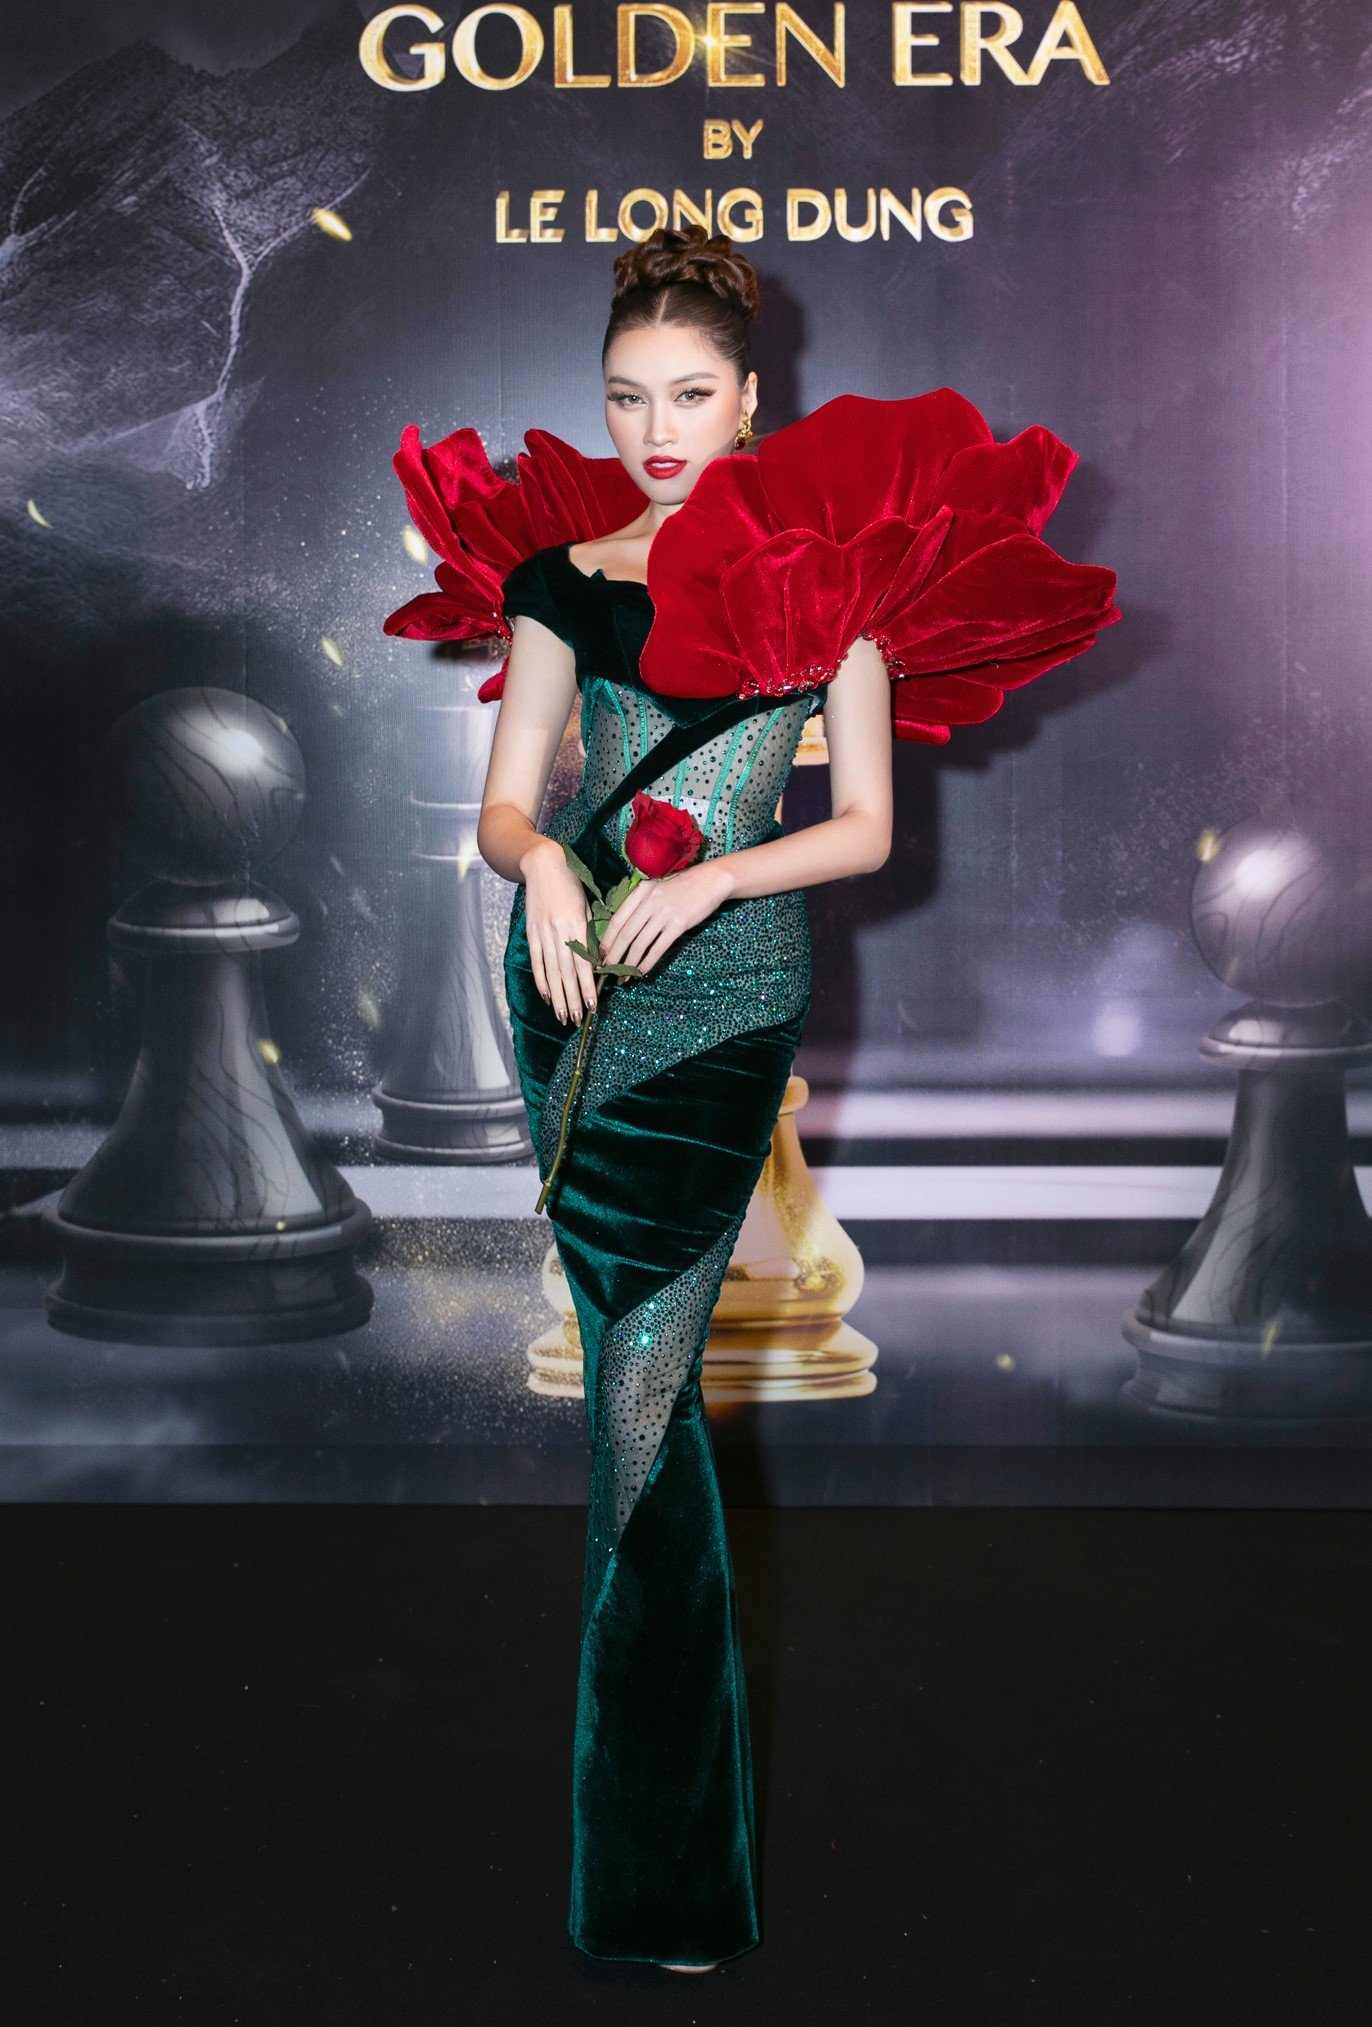 Nữ MC Thanh Thanh Huyền đã có một diện mạo ấn tượng khi diện chiếc váy chất liệu nhung tôn đường cong với phần vai áo được xếp nếp sáng tạo lấy cảm hứng từ cánh hoa hồng. 